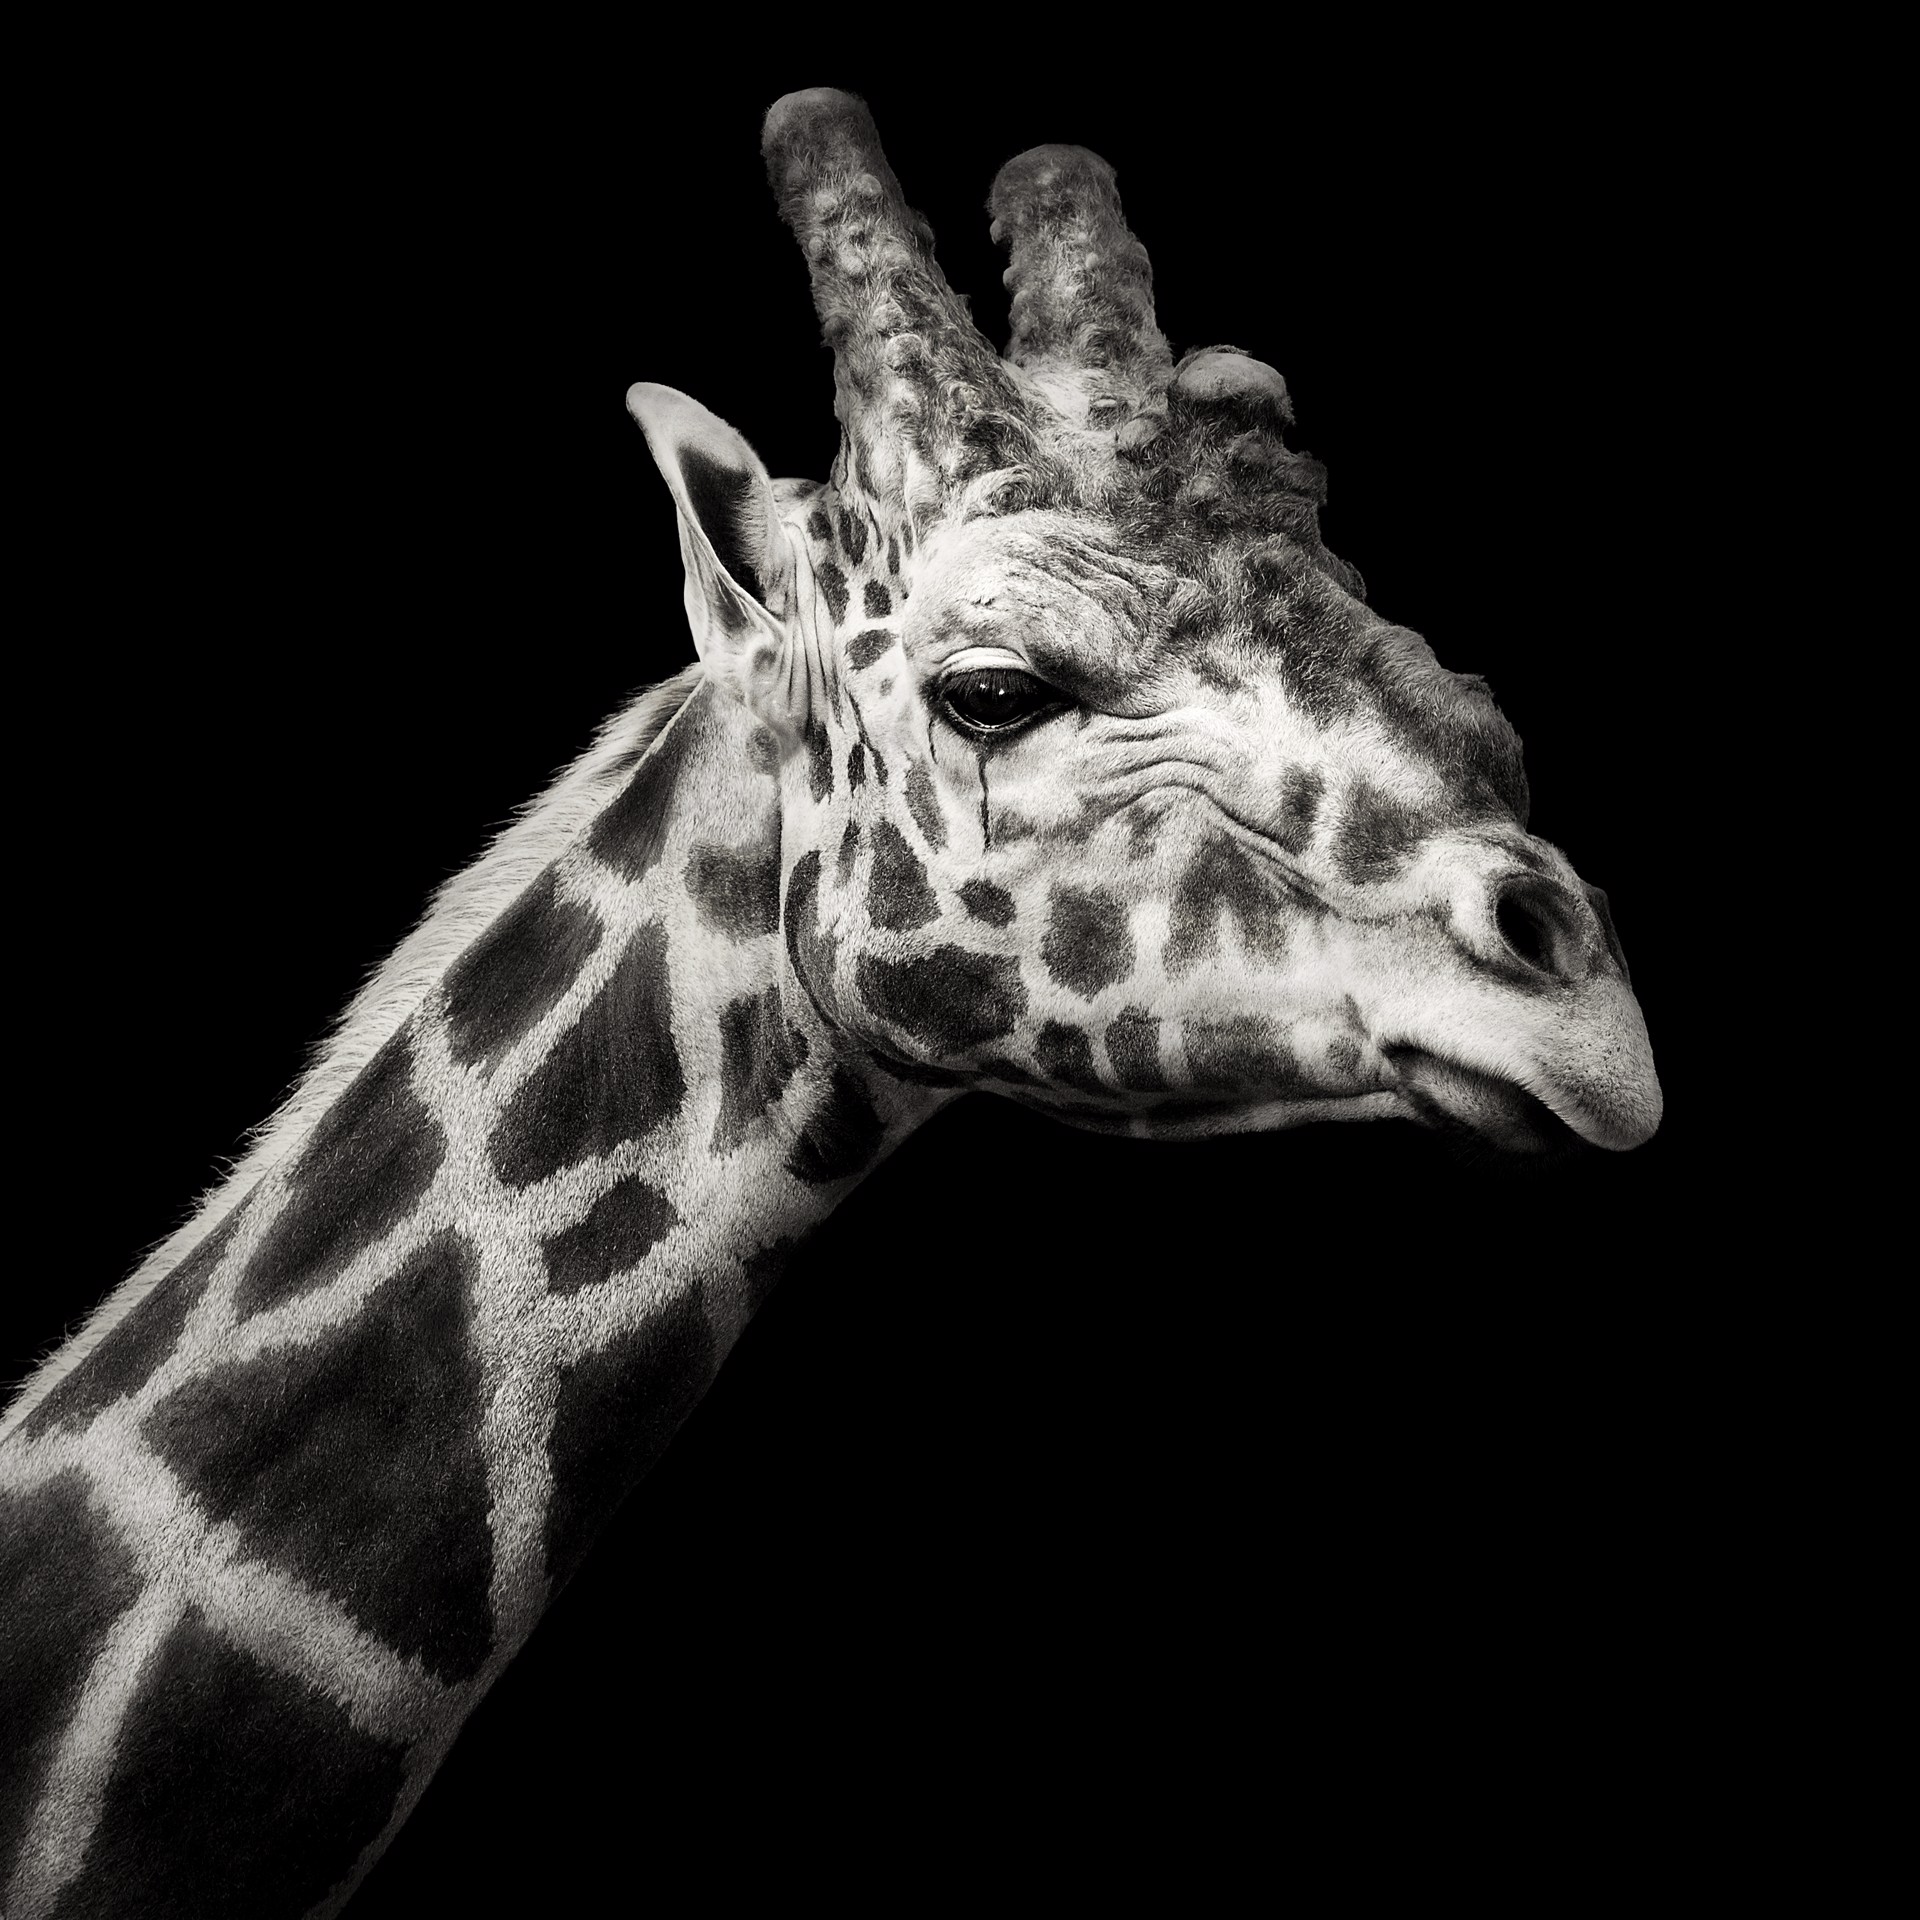 Portrait of Giraffe by Lauren Chambers